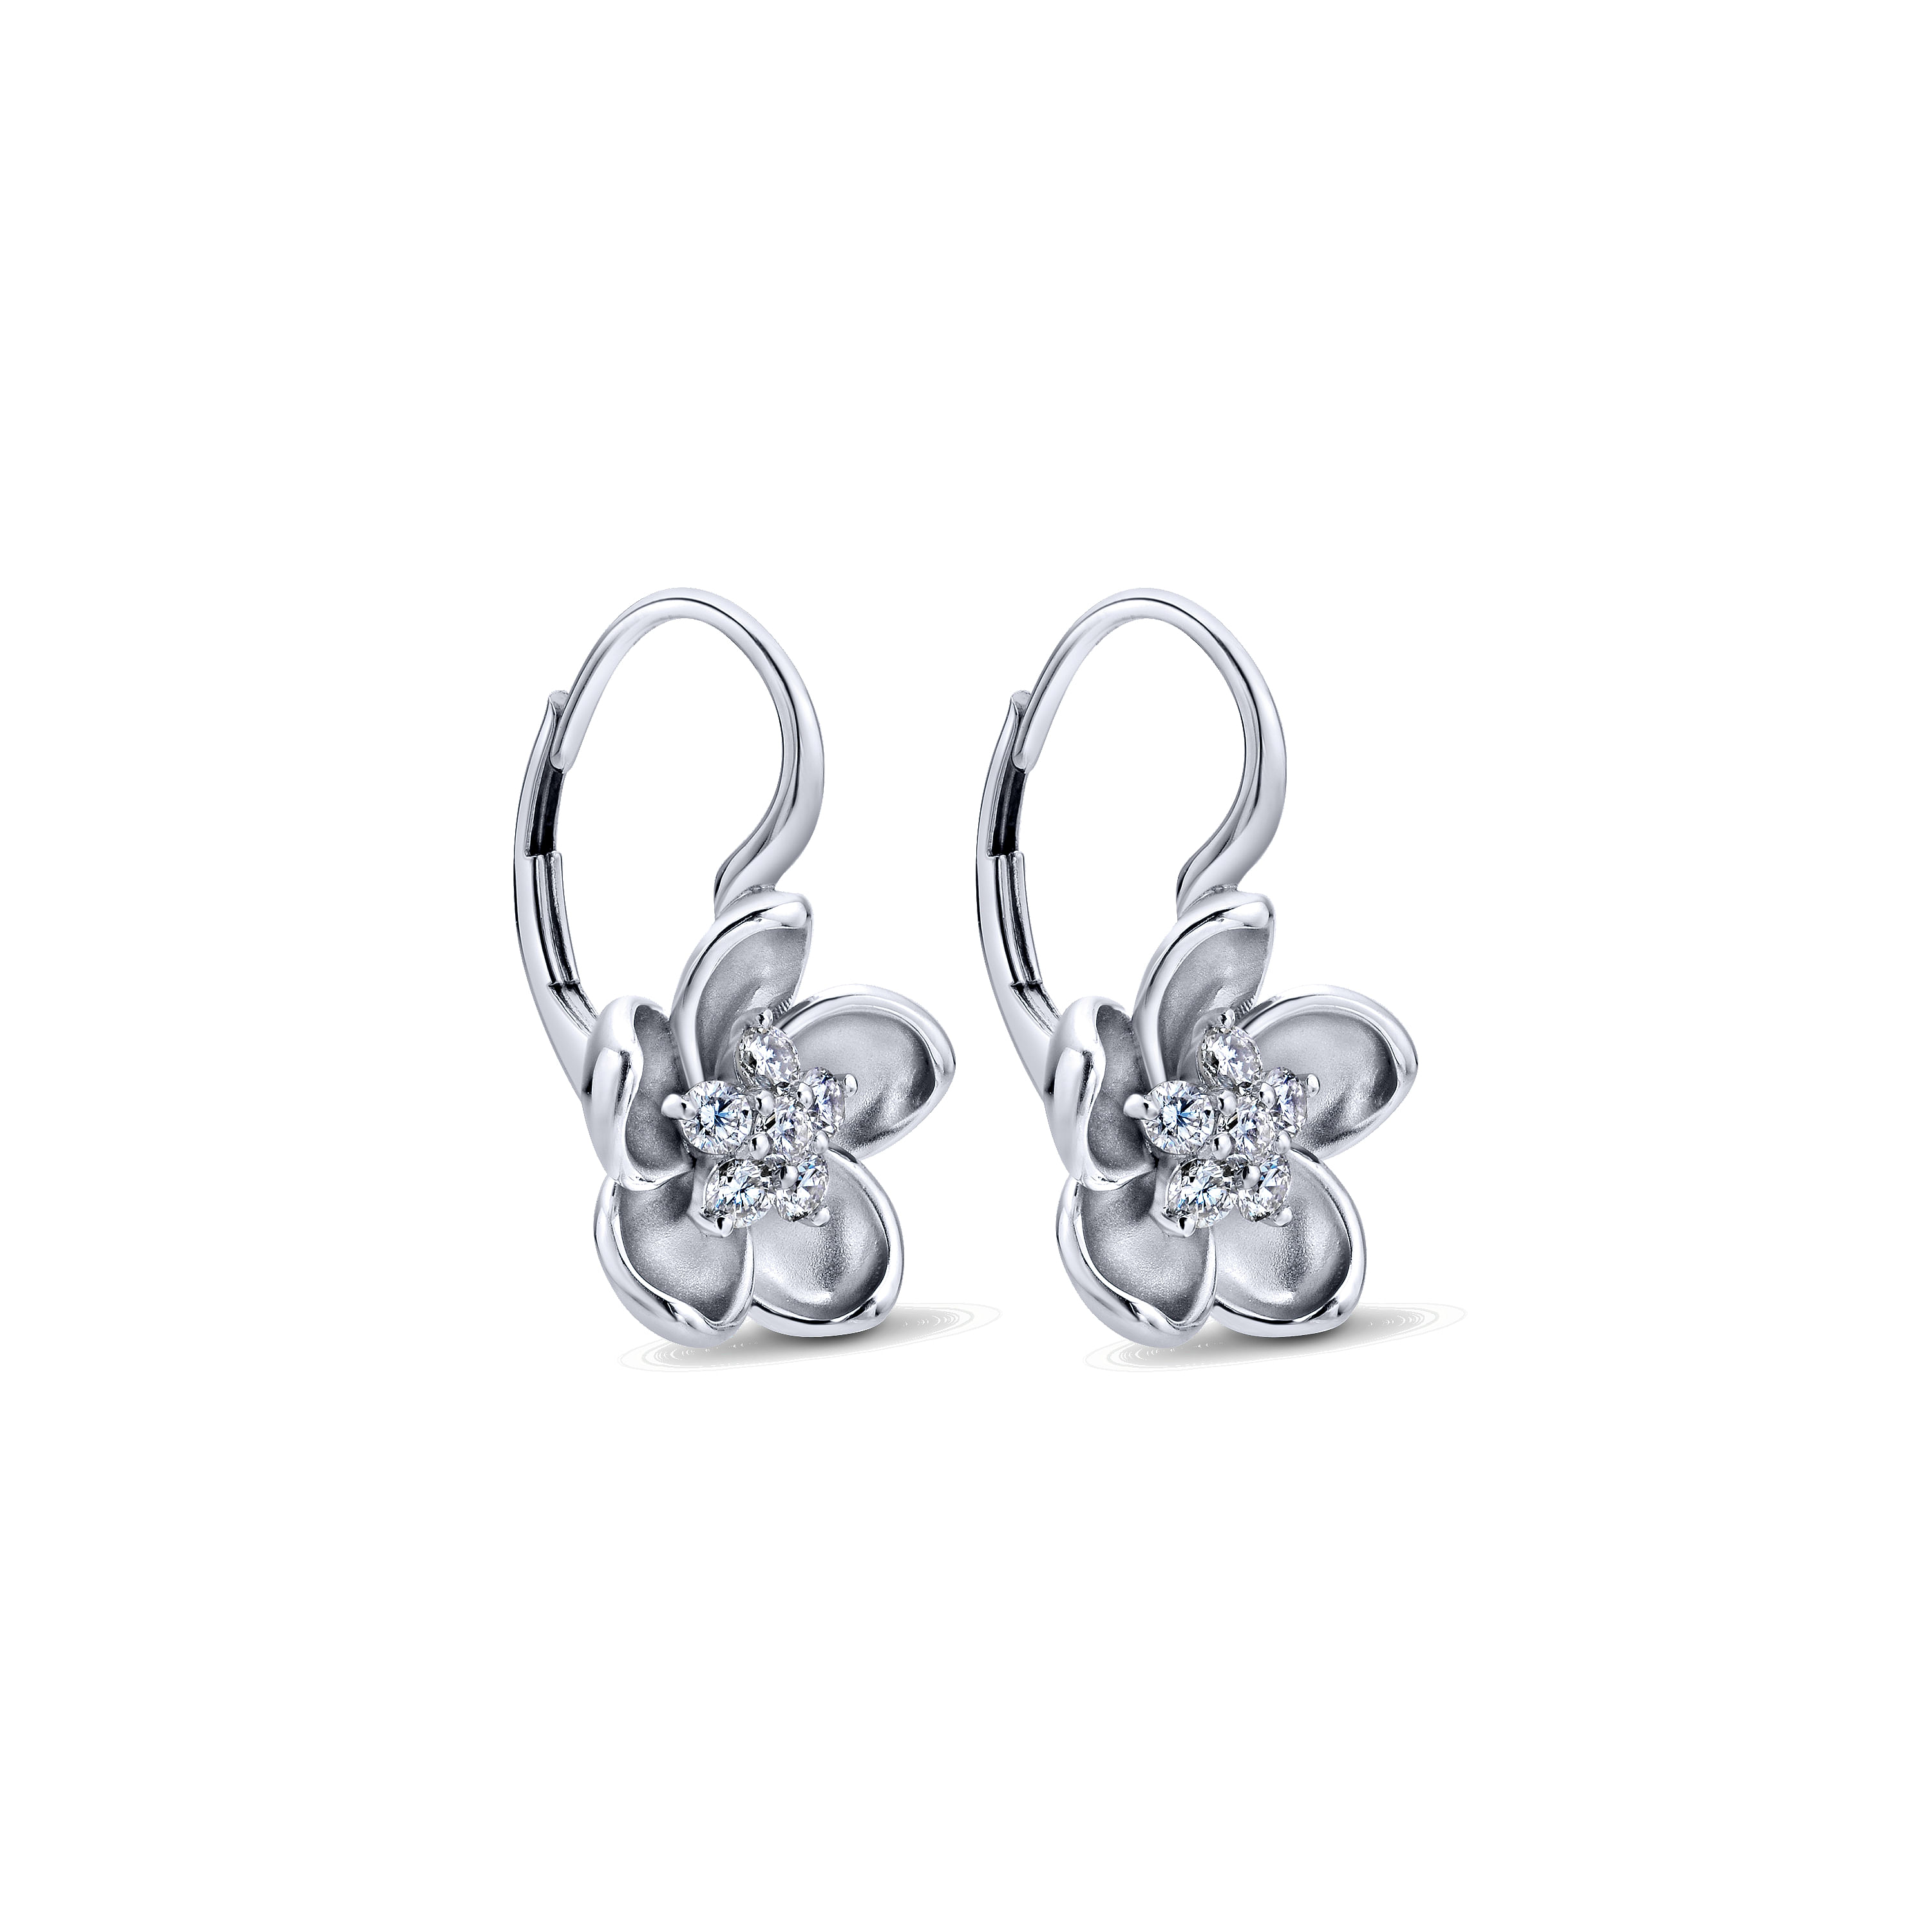 14K White Gold Leverback Flower Earrings with Diamond Center